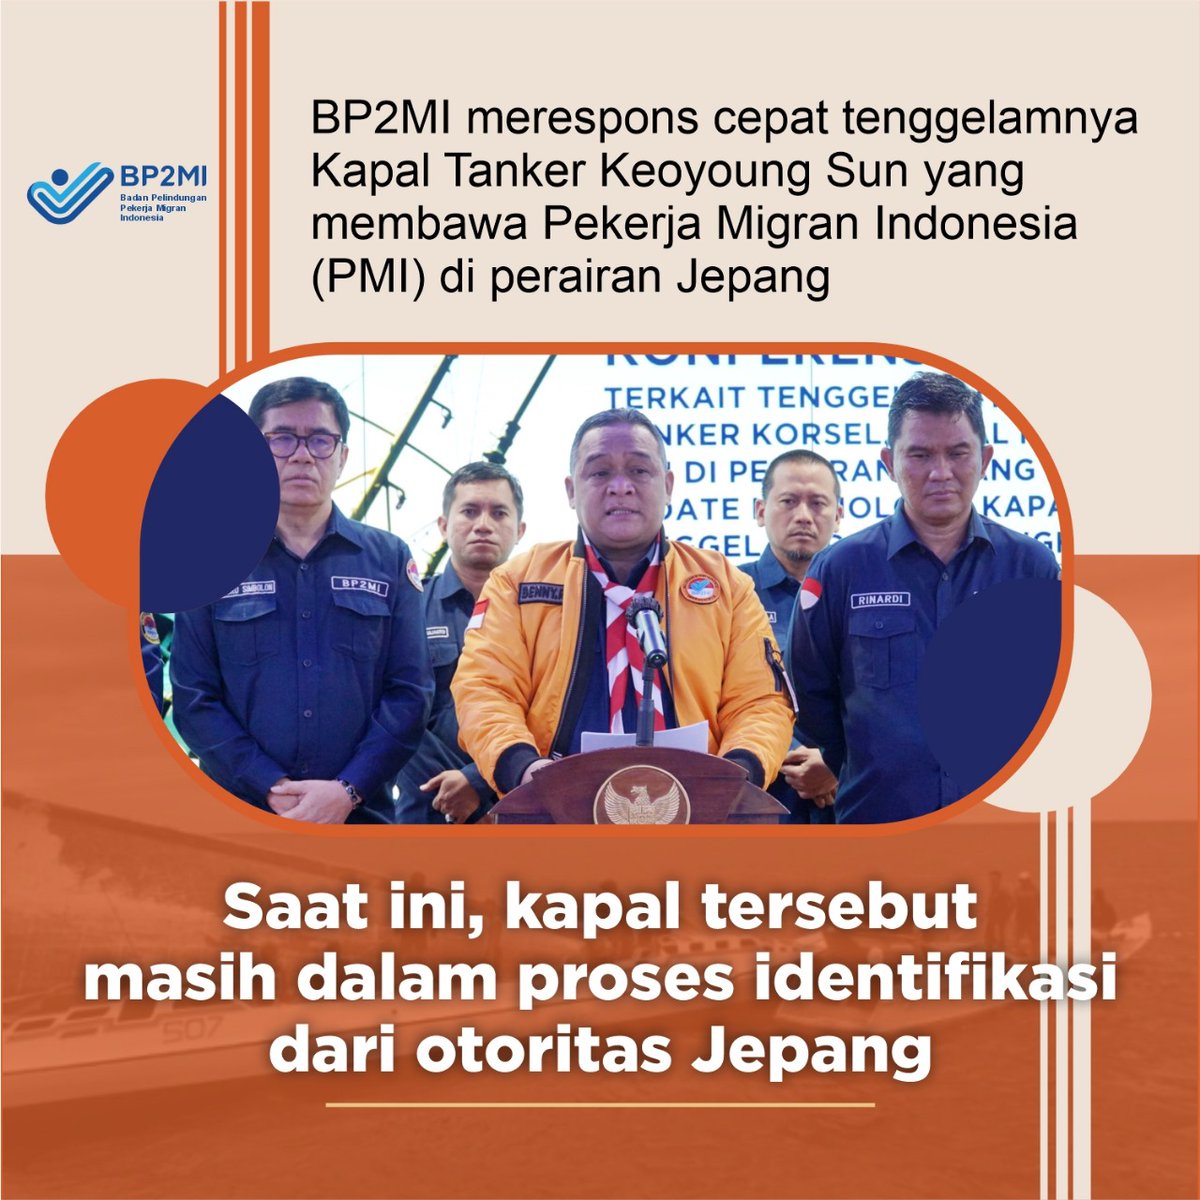 #ResponCepatBP2MI Saat ini, kapal tersebut masih dalam proses identifikasi dari otoritas Jepang Respon @Kepala_BP2MI terhadap musibah tenggelamnya kapal Tangker Keoyoung Sun yang membawa 8 Pekerja Migran Indonesia @bp2mi_ri @StefanAntonio__ @bejoterus2005